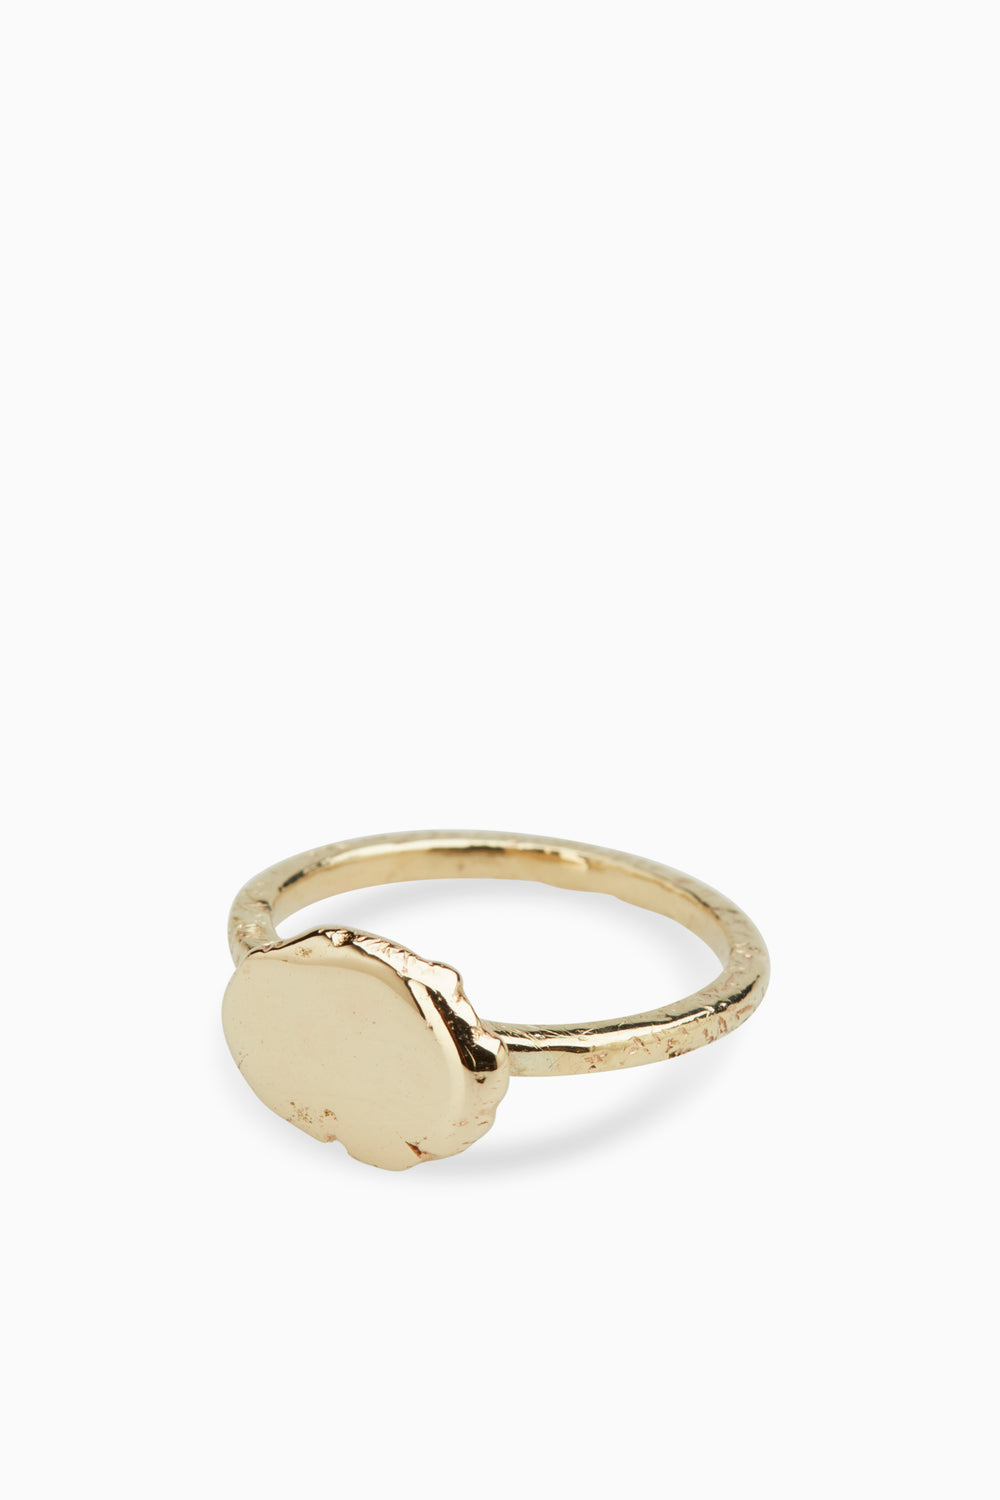 Ingot Ring | Solid Gold